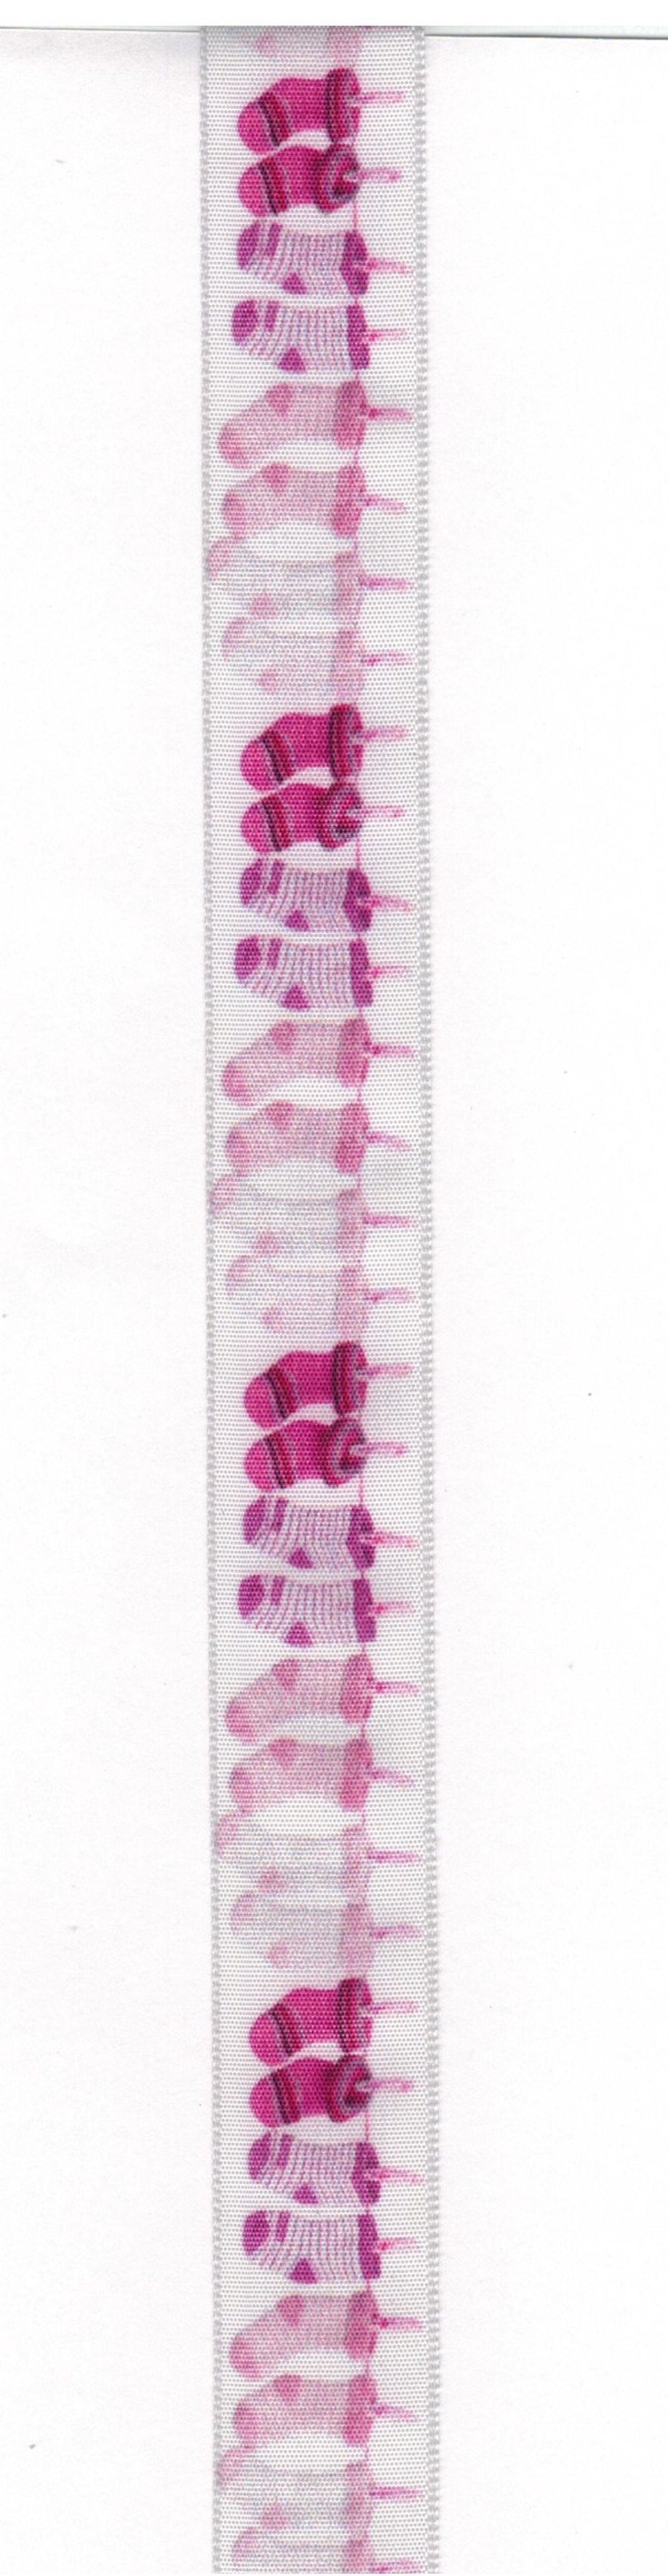 Geschenkband, 2,5 cm breit, rosa Söckchen auf der Leine